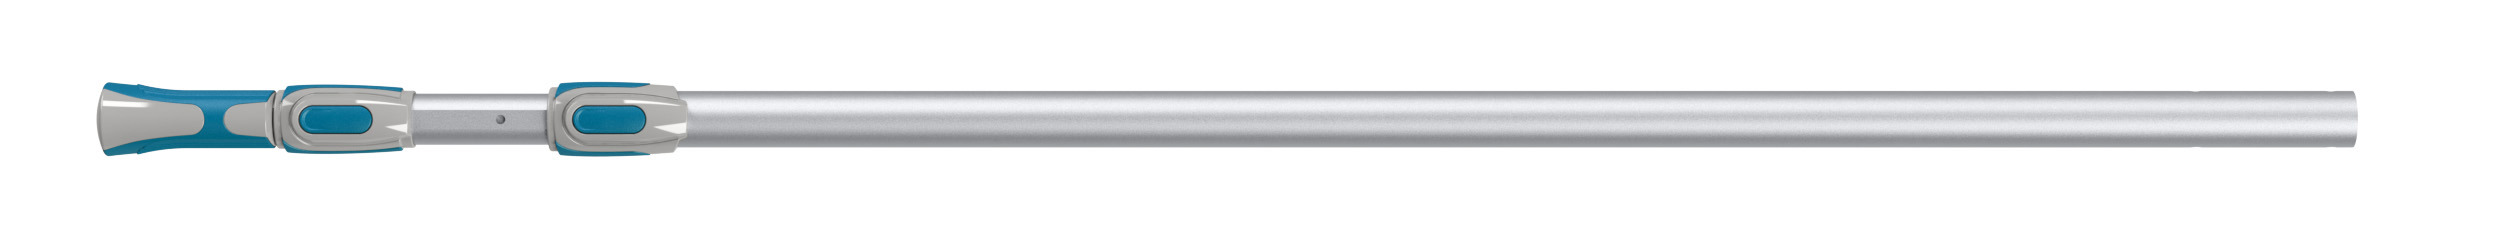 19310116 Ручка телескопическая 1.5-4.5 м алюминий STLM-0013448 NATERIAL